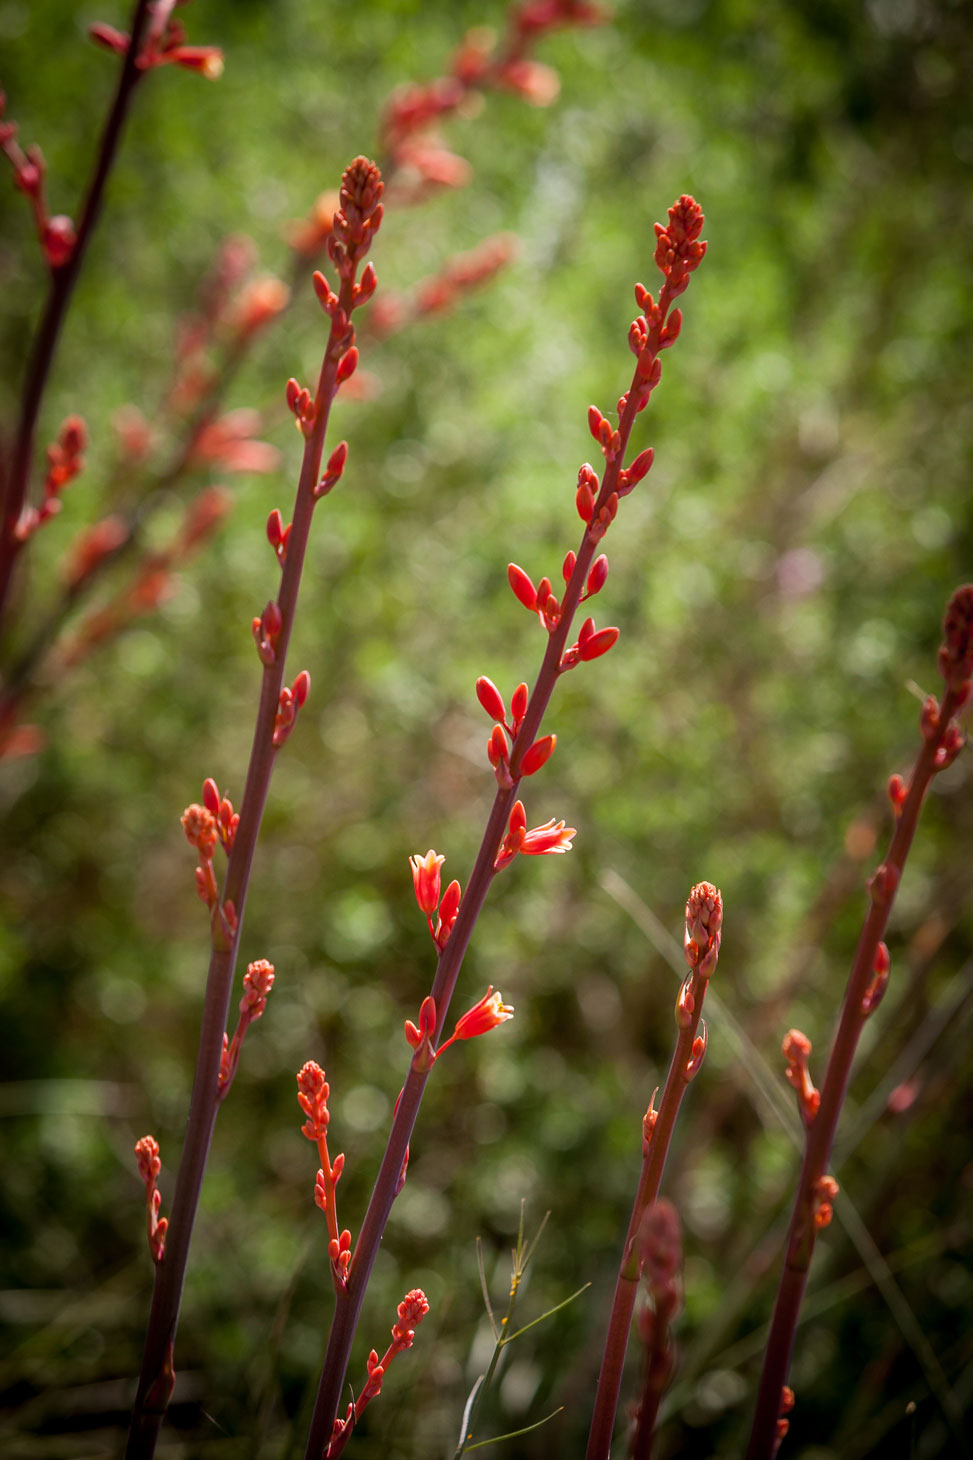 Multiple stalks full of Red Hesperaloe flowers.